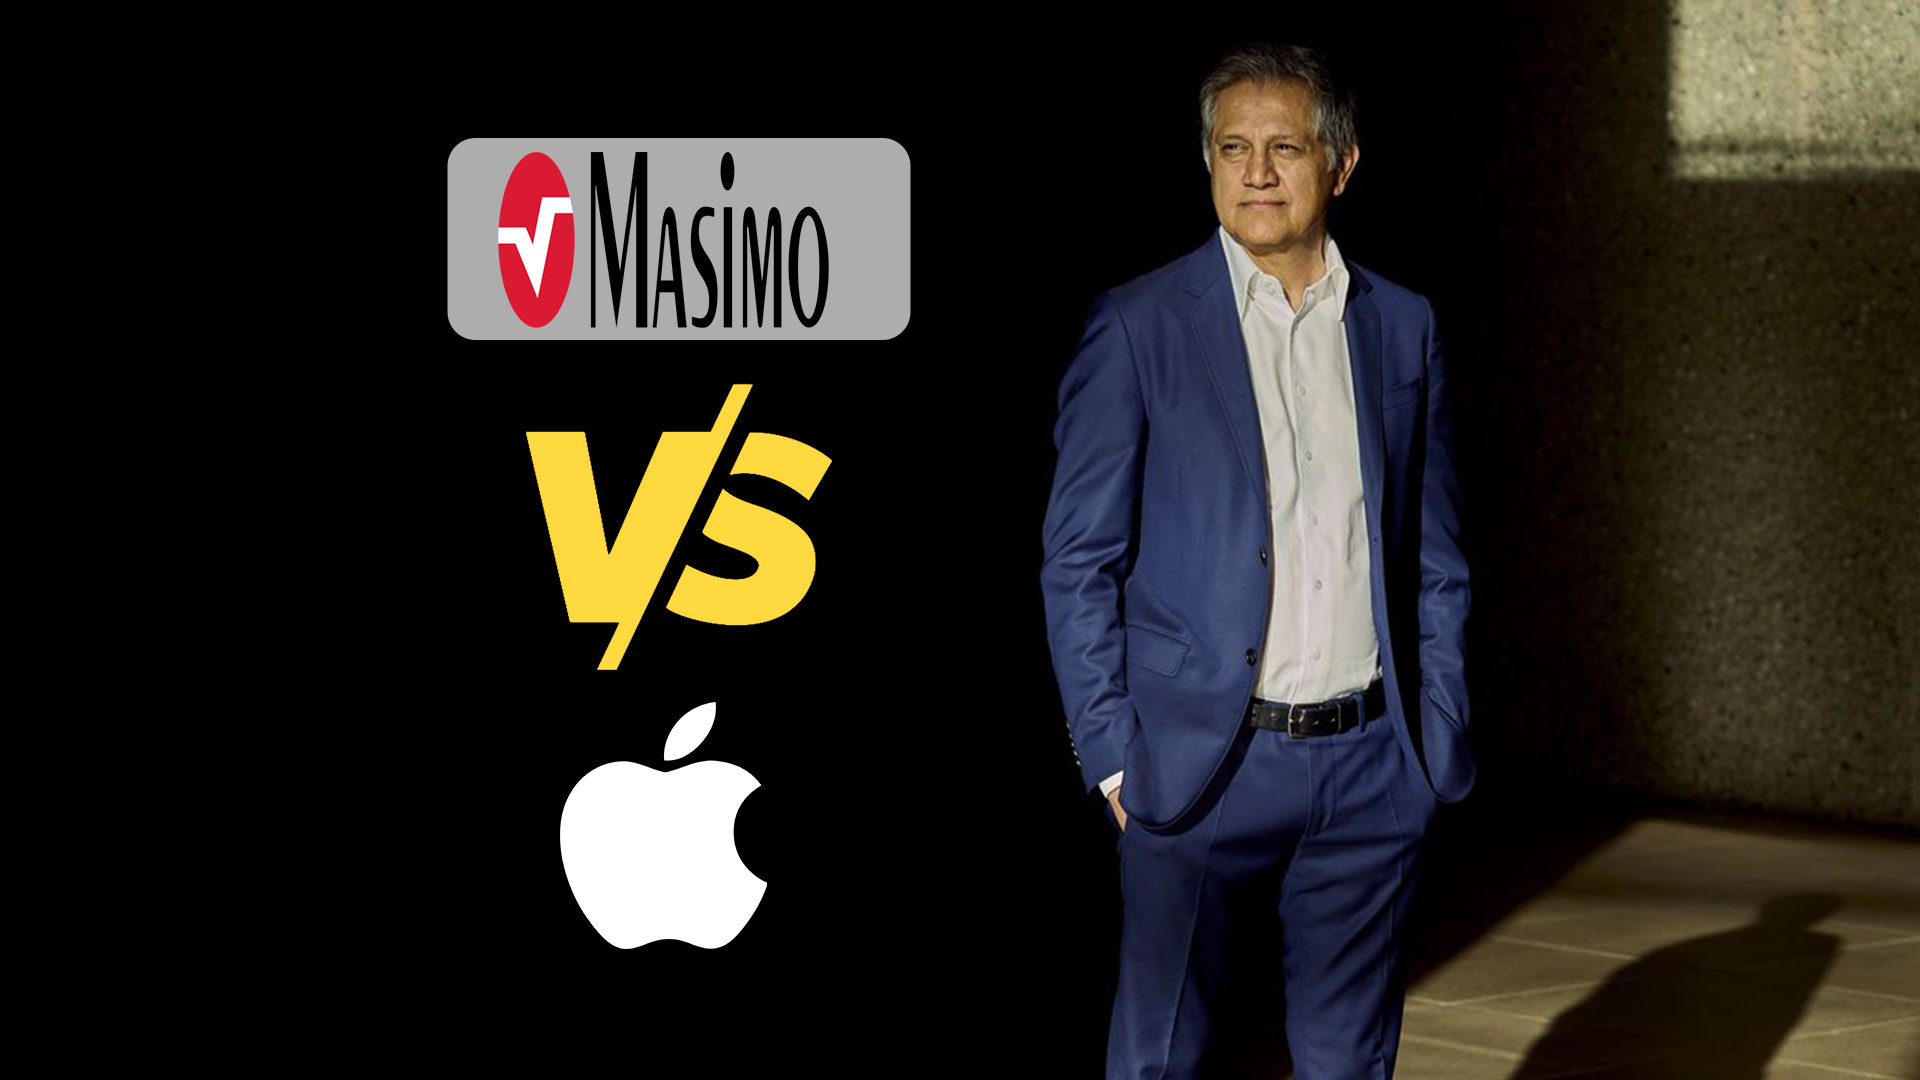 هزینه ۱۰۰ میلیون دلاری ماسیمو برای شکایت از اپل